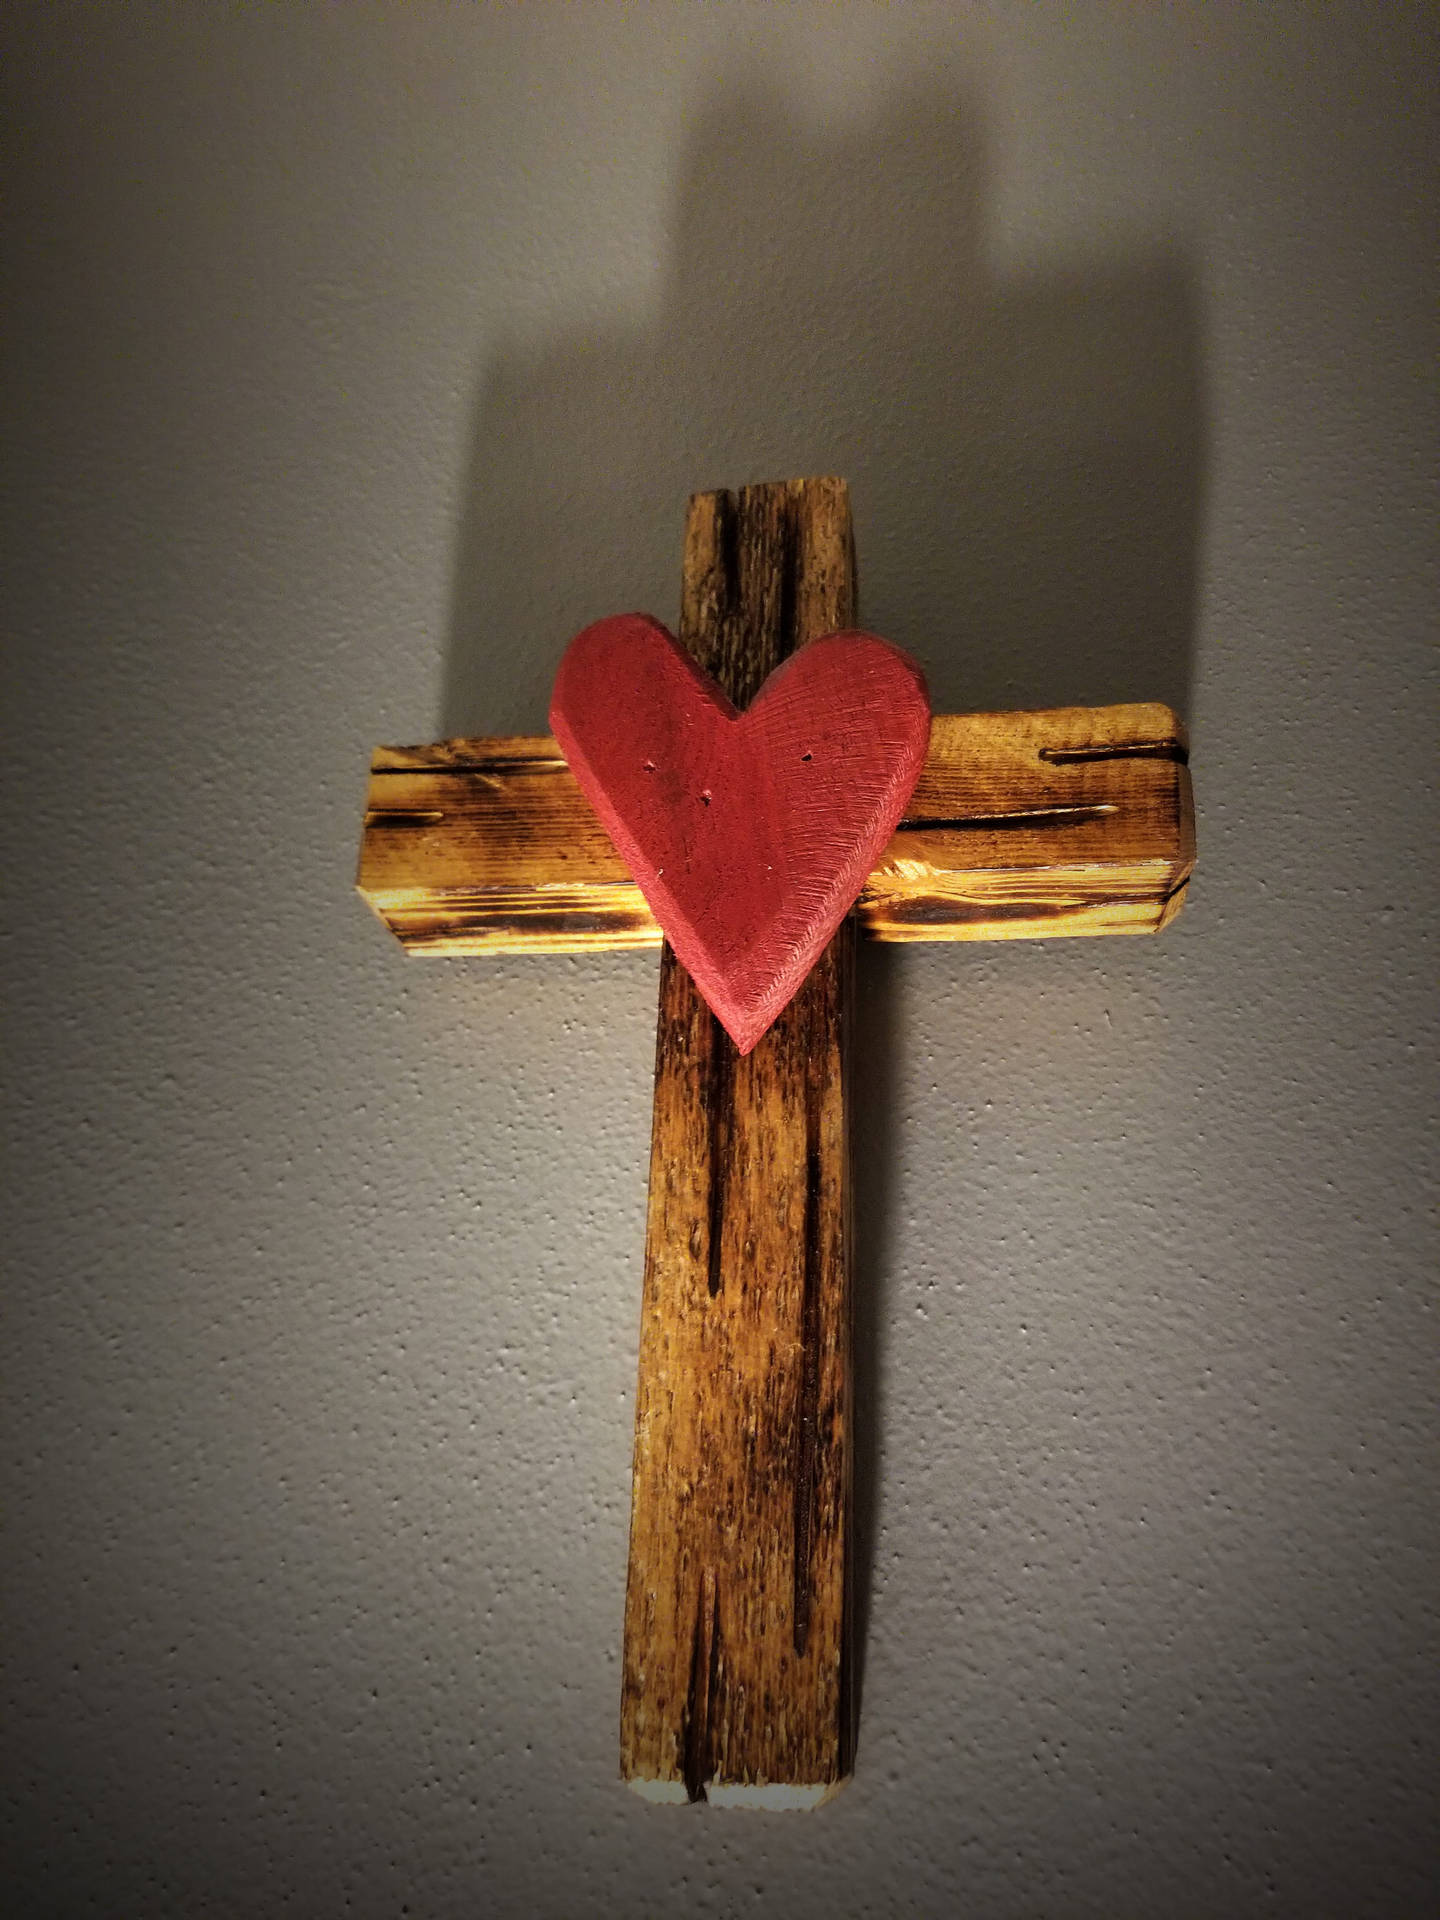 I Love Jesus Iphone With Wooden Cross Wallpaper